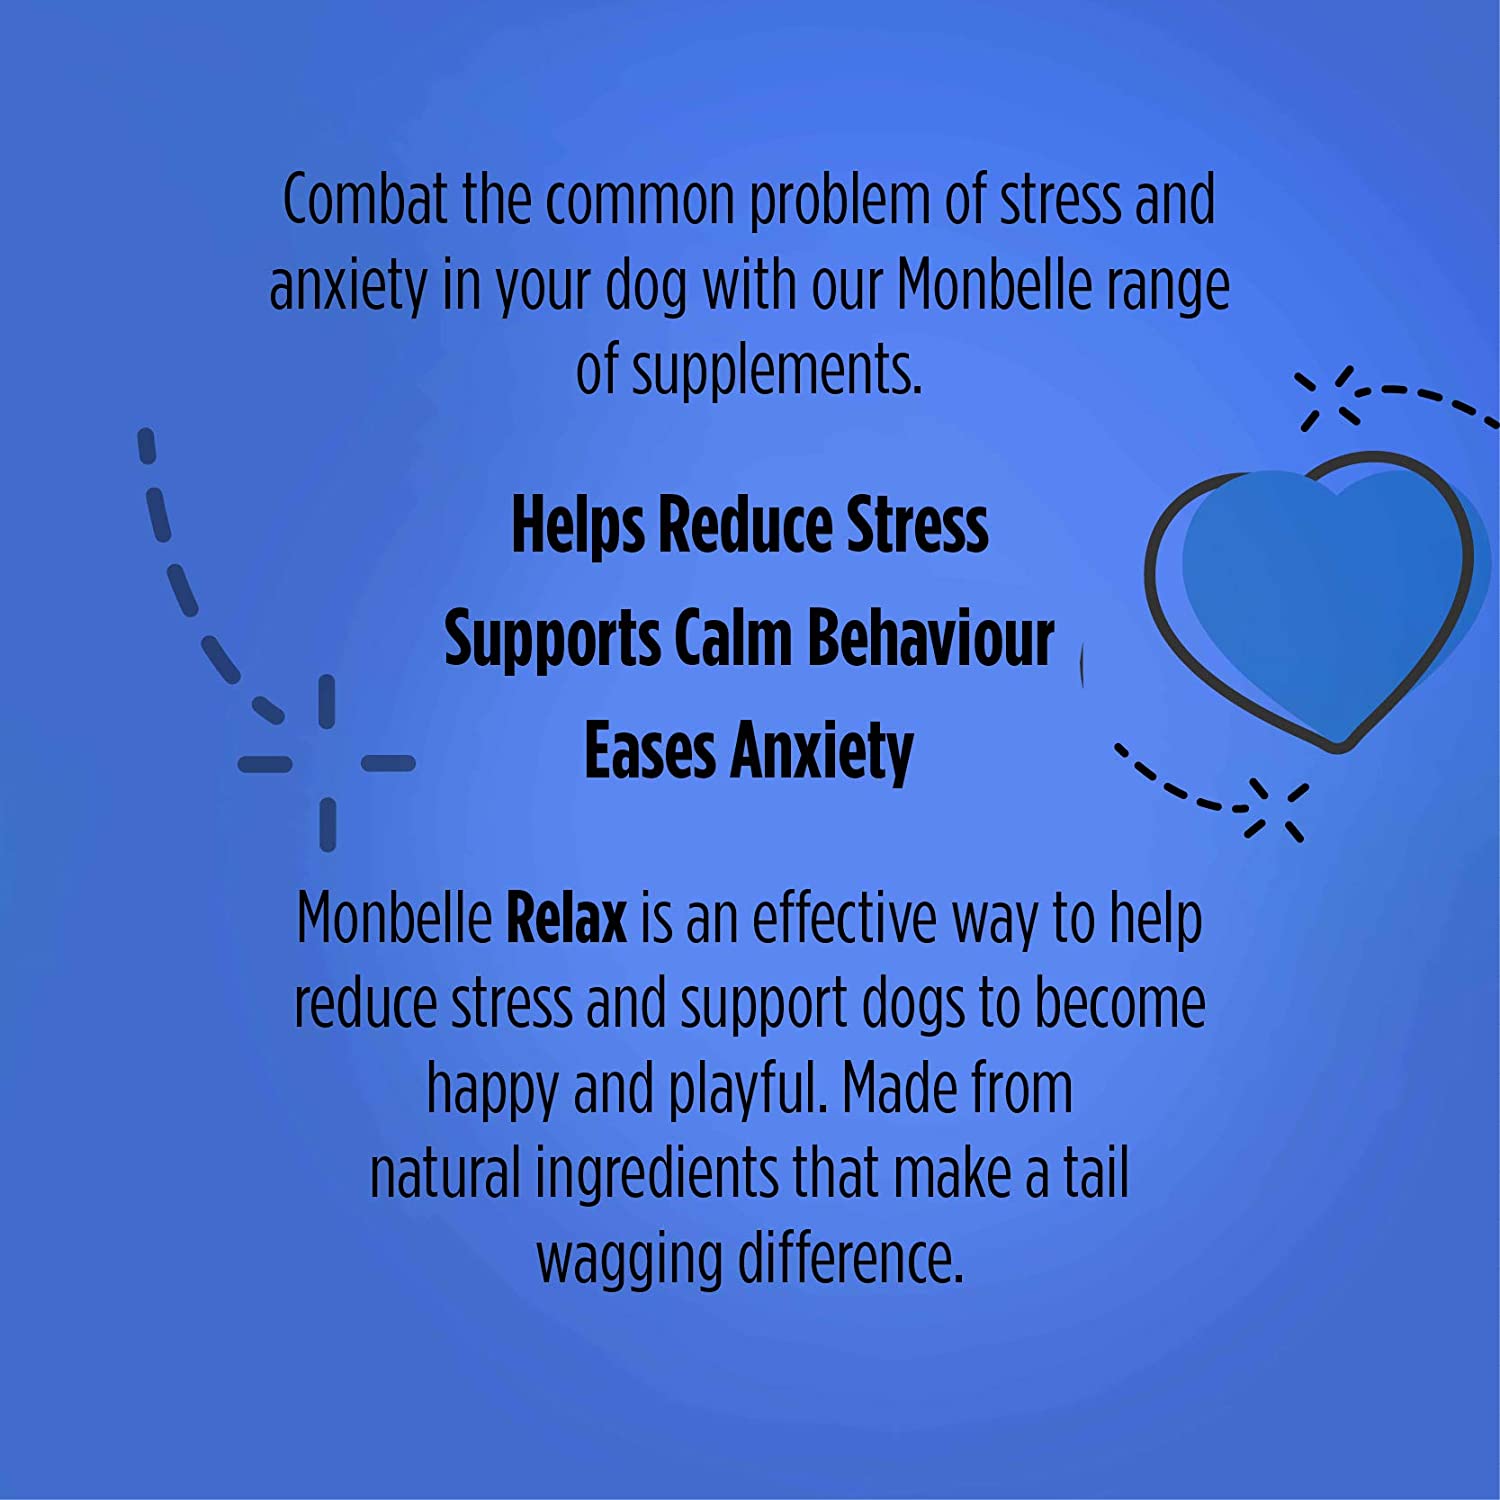  Monbelle Relax, 120 Tabletas | Ayuda a Calmar Perros Estresados o Nerviosos | Motiva el Comportamiento Calmado | Avalado por Veterinarios 